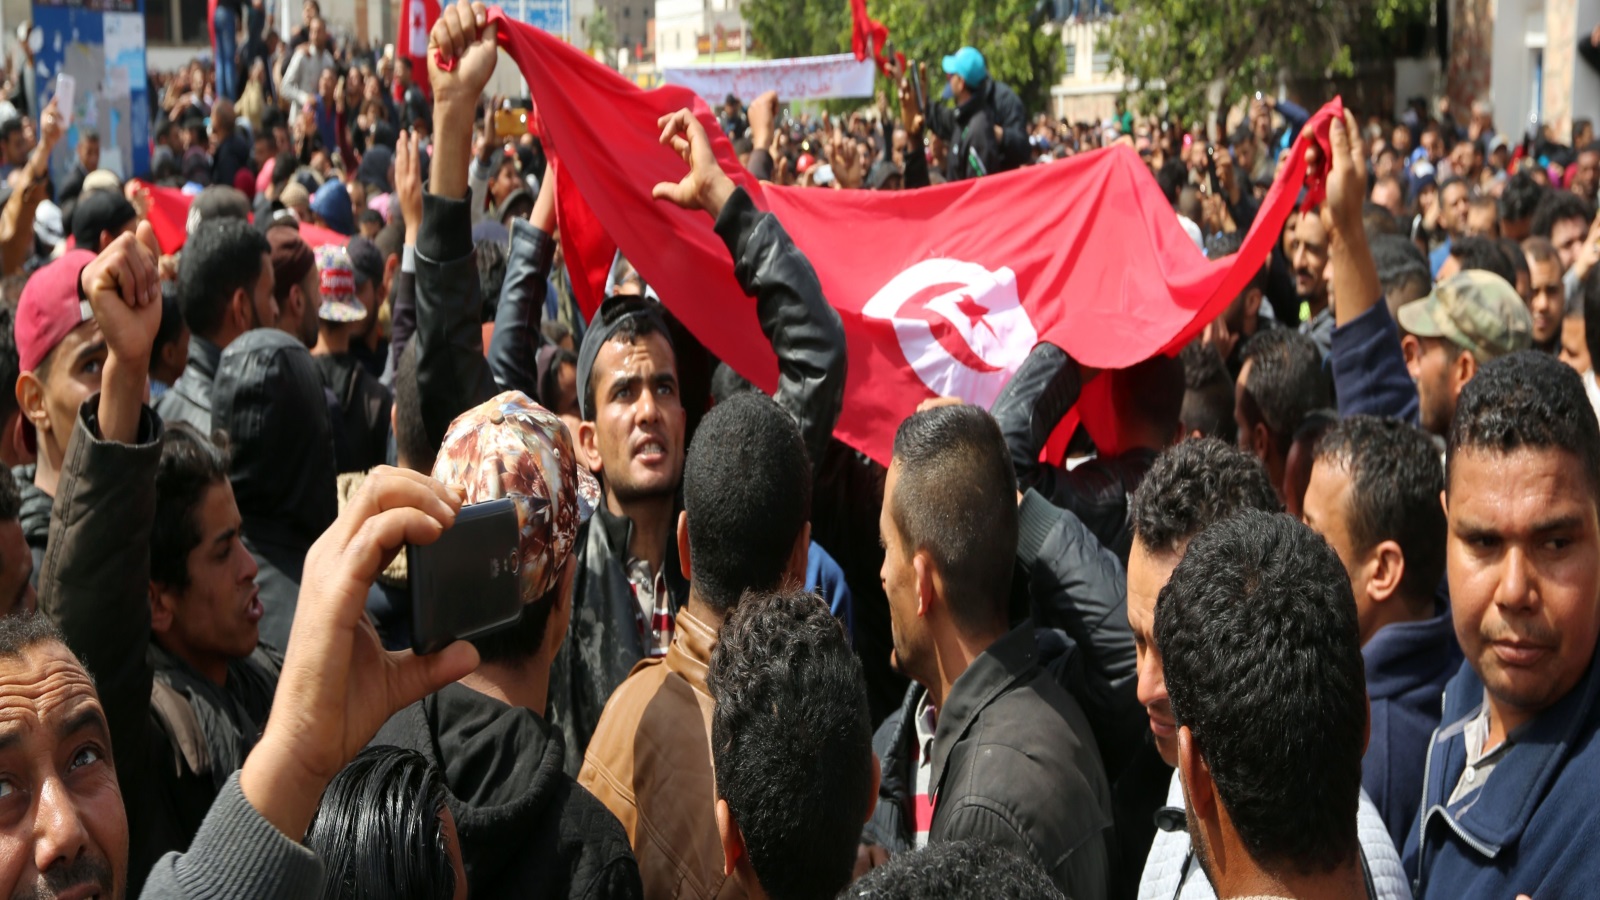 الشعب التونسي يشعر أنه معزول عن الحكومة، فنسبة ثقة المواطنين بالحكومة التونسية انخفضت من 62٪ بعد انتهاء الثورة التونسية إلى 35٪ فقط